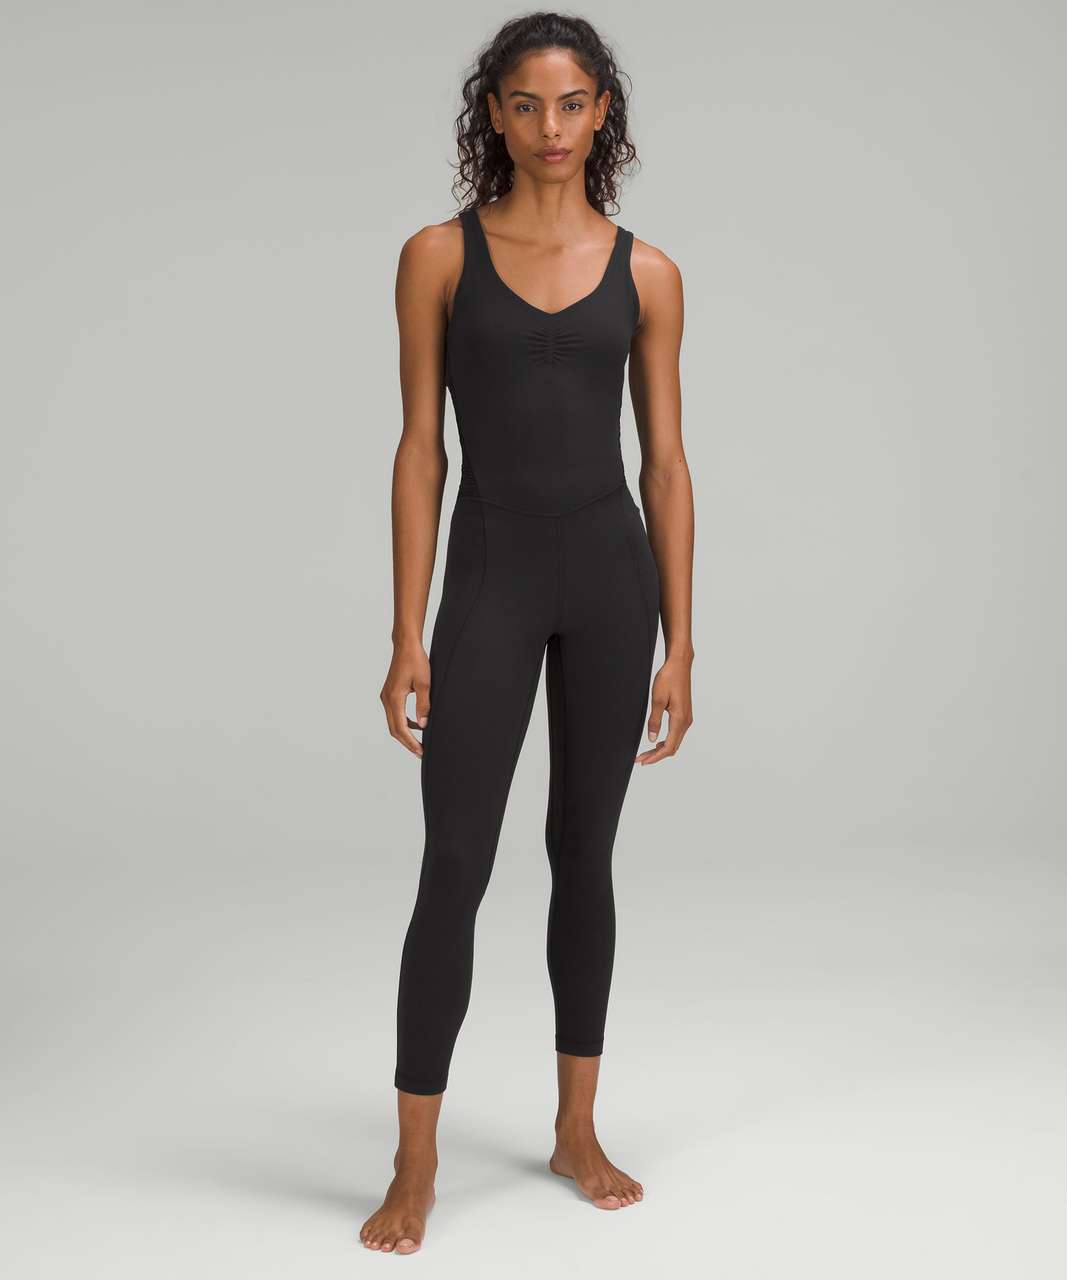 Lululemon Ruched Yoga Bodysuit 25" - Black